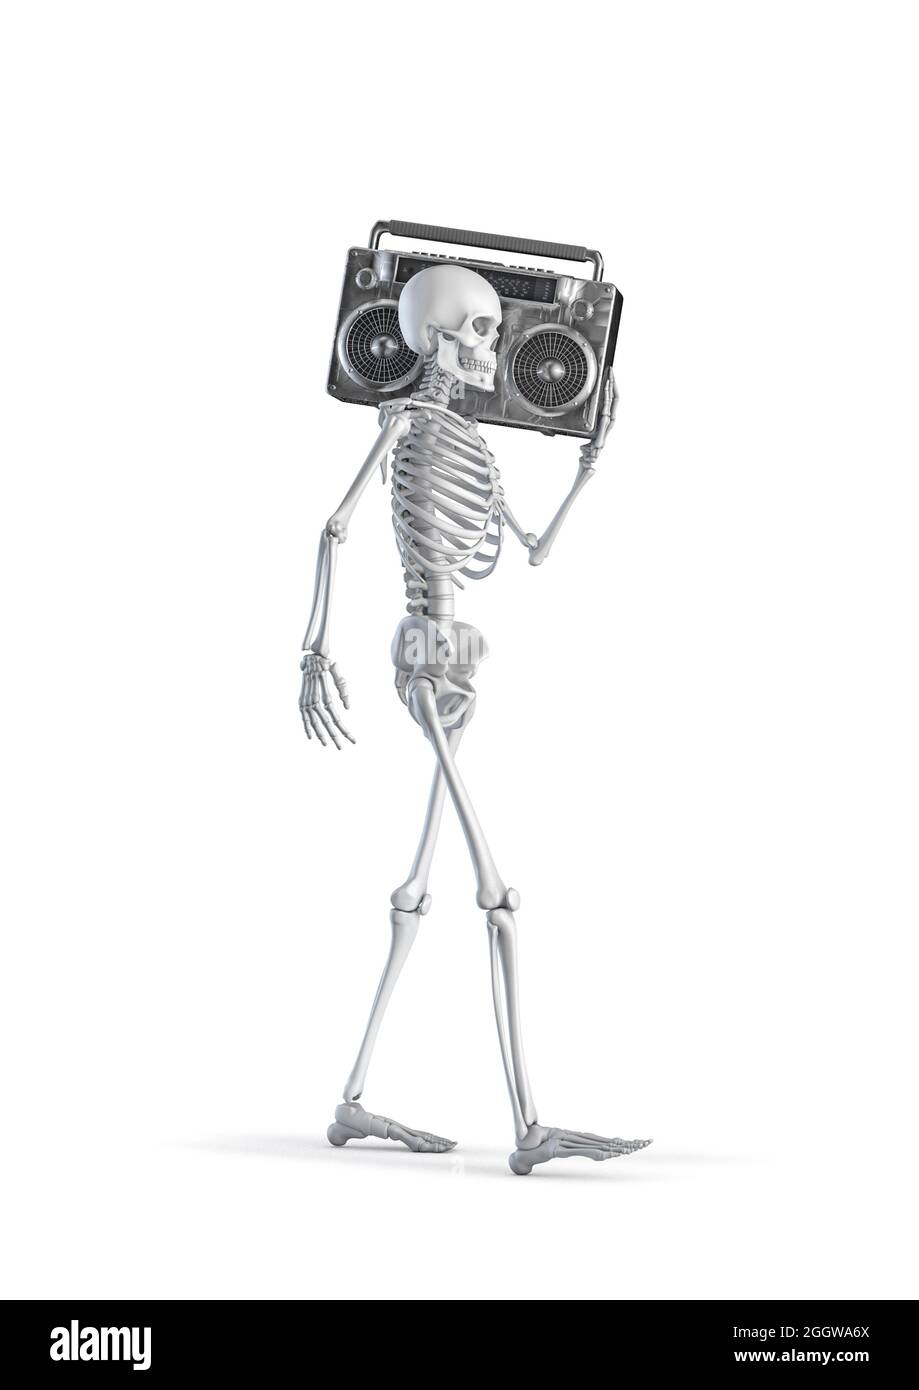 Scheletro con boombox - illustrazione in 3D di figura scheletro umano maschile che trasporta il riproduttore di cassette stereo retro anni '80 isolato su sfondo bianco studio Foto Stock